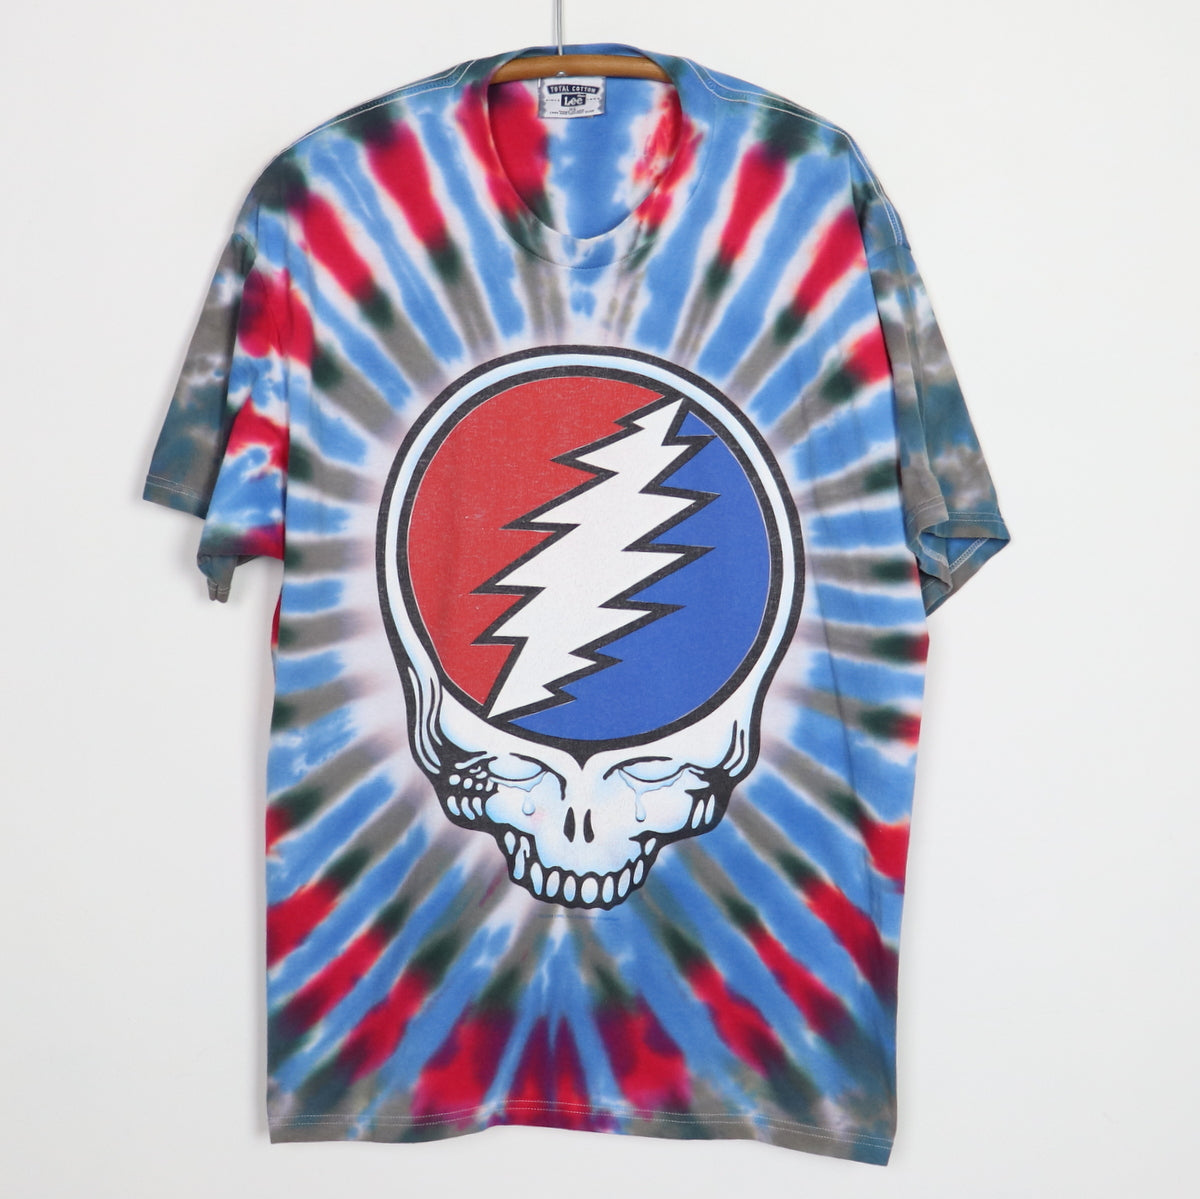 1995 Grateful Dead Fare Thee Well Tie Dye Shirt